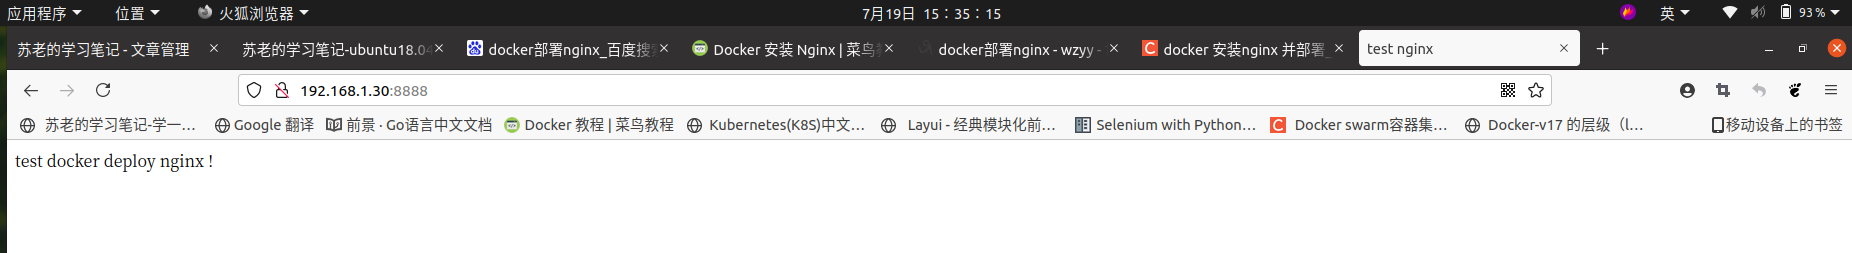 docker_deploy_nginx2.png